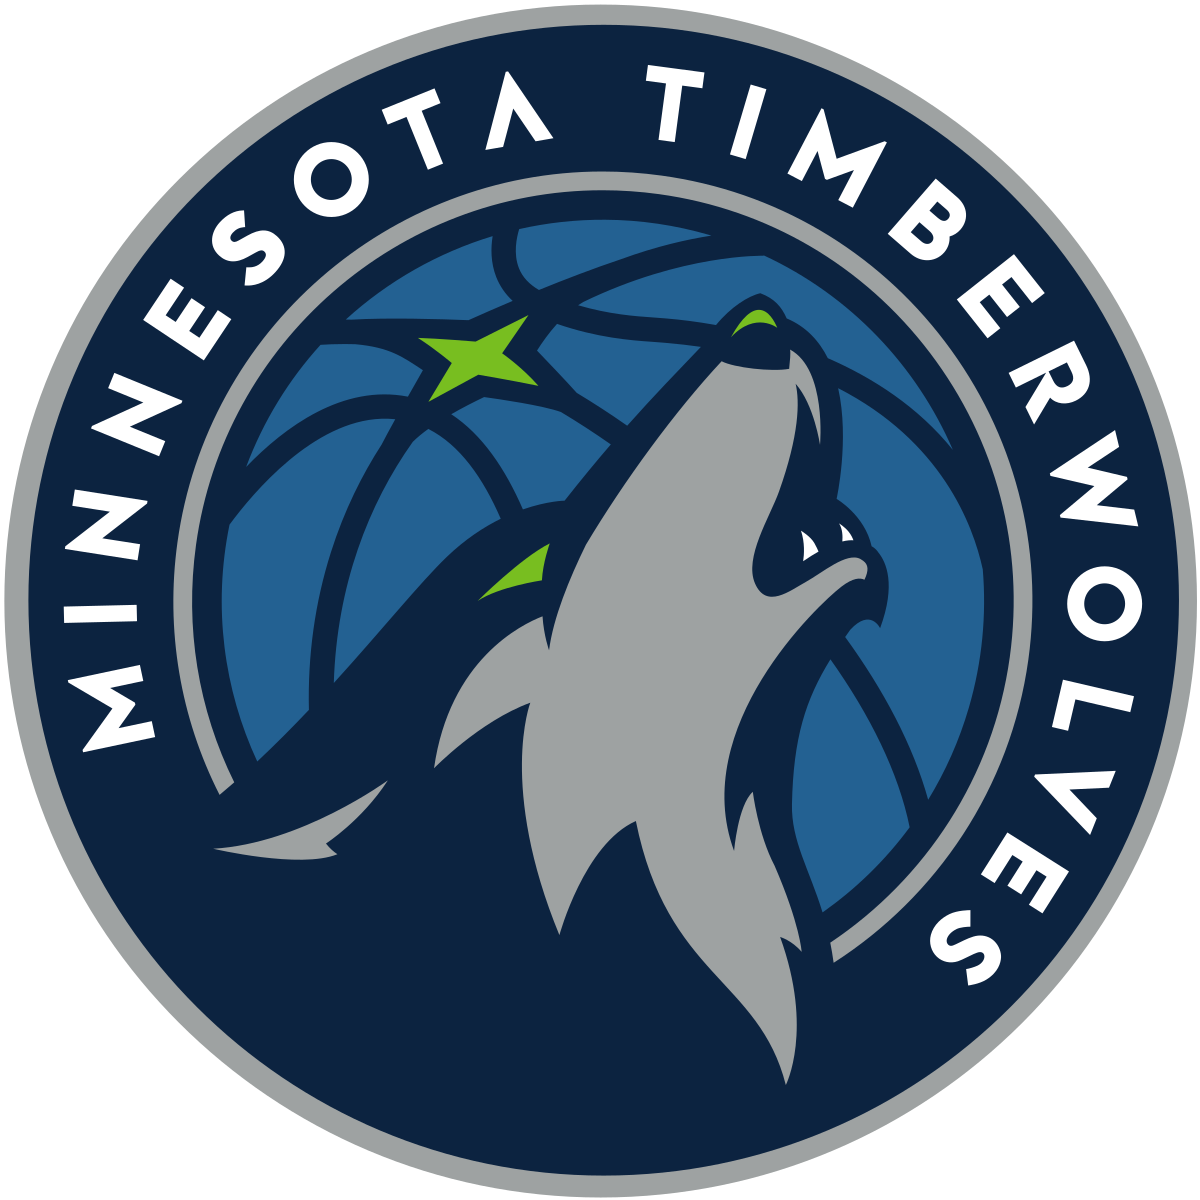 Minnesota Timberwolves Wikipedia